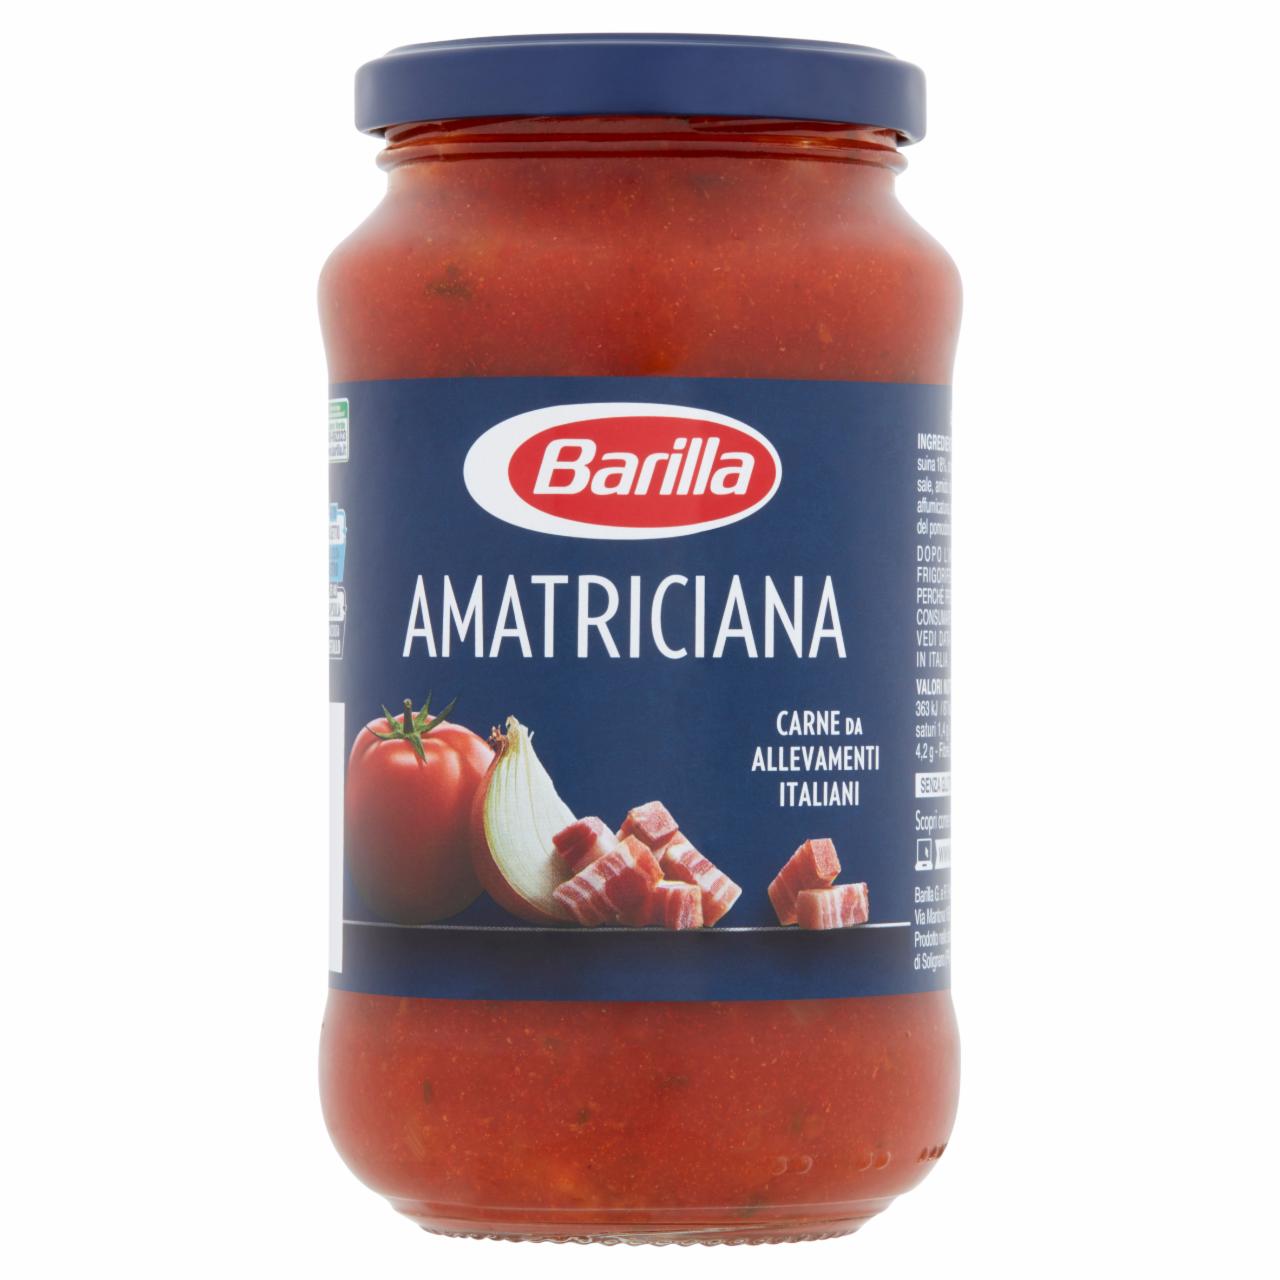 Képek - Barilla paradicsomszósz Amatriciana módra sertés pancettával 400 g